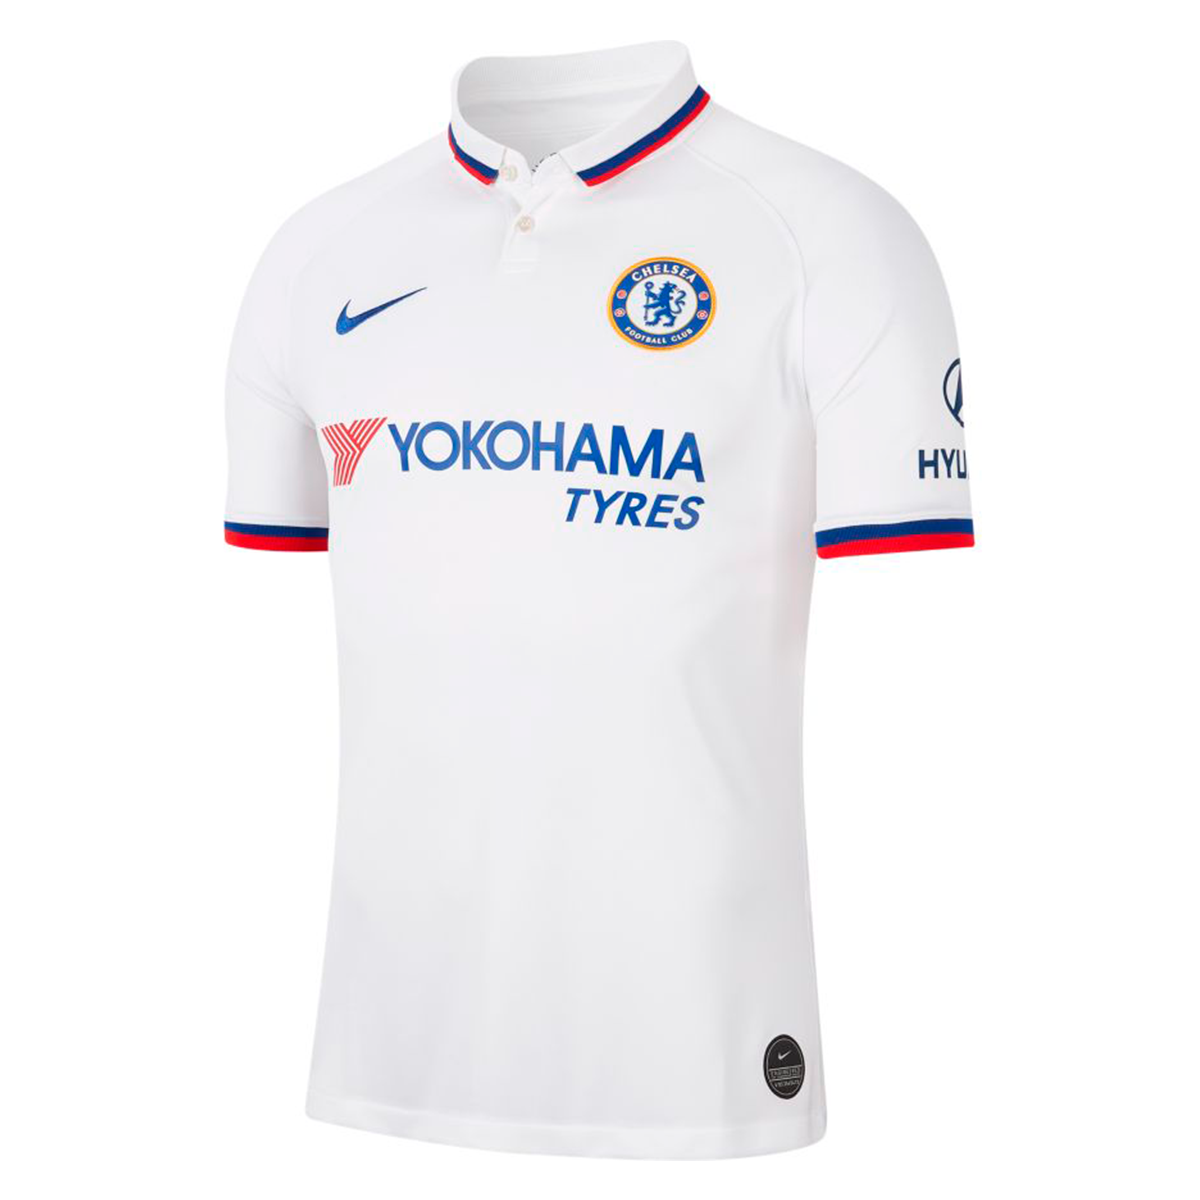 Camiseta Nike Chelsea Fc Breathe Stadium Segunda Equipacion 2019 2020 White Rush Blue Tienda De Futbol Futbol Emotion